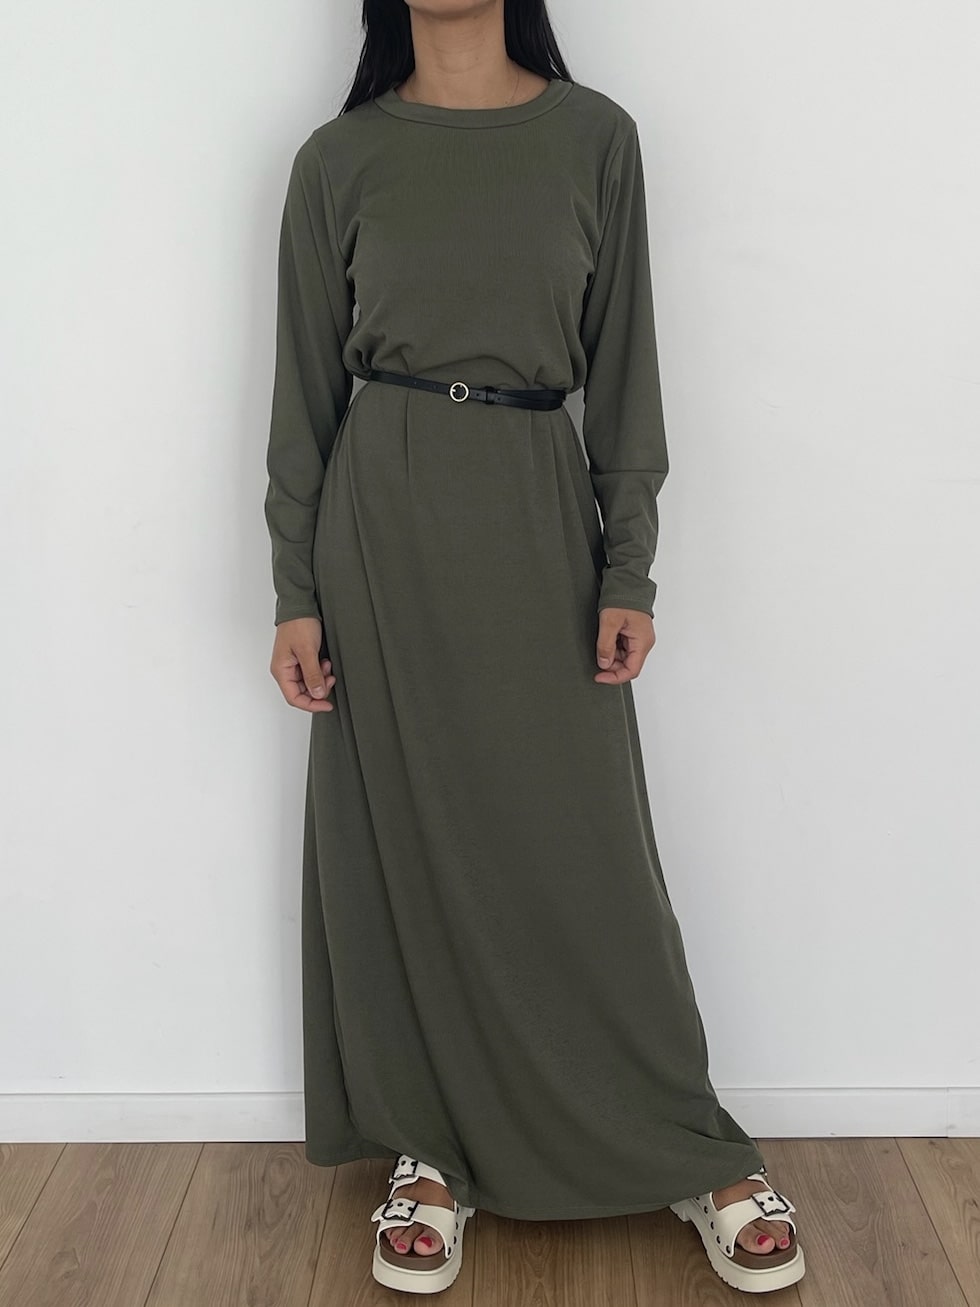 Robe longue verte style vintage avec ceinture noire pour femme